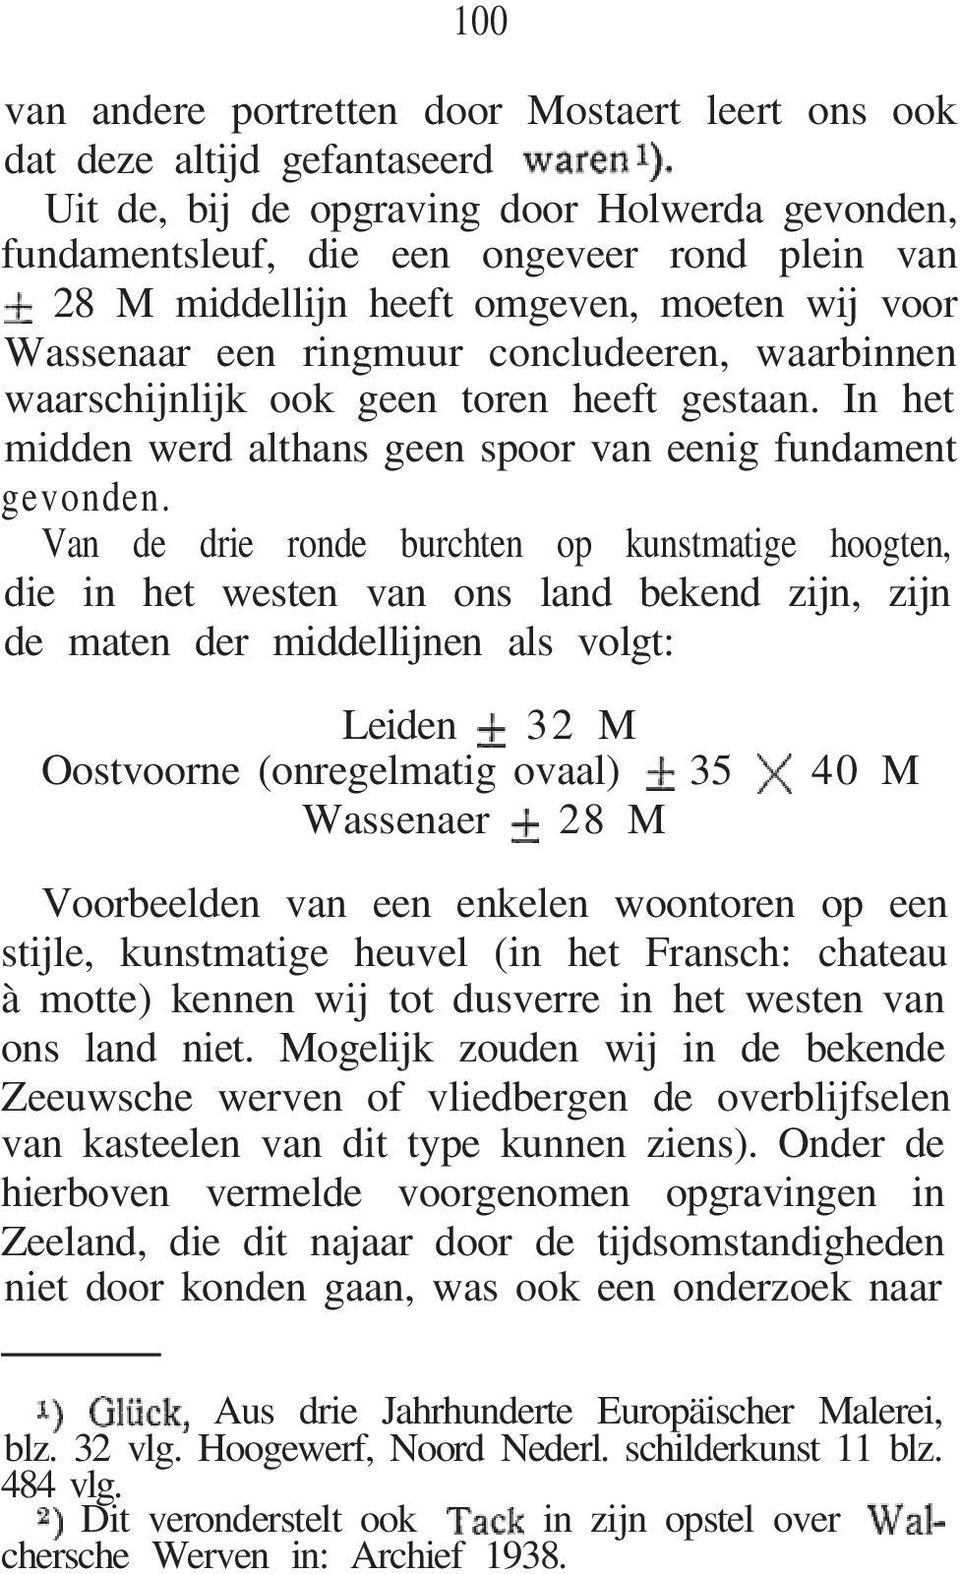 Van de drie ronde burchten op kunstmatige hoogten, die in het westen van ons land bekend zijn, zijn de maten der middellijnen als volgt: Leiden 32 M Oostvoorne (onregelmatig ovaal) 35 40 M Wassenaer